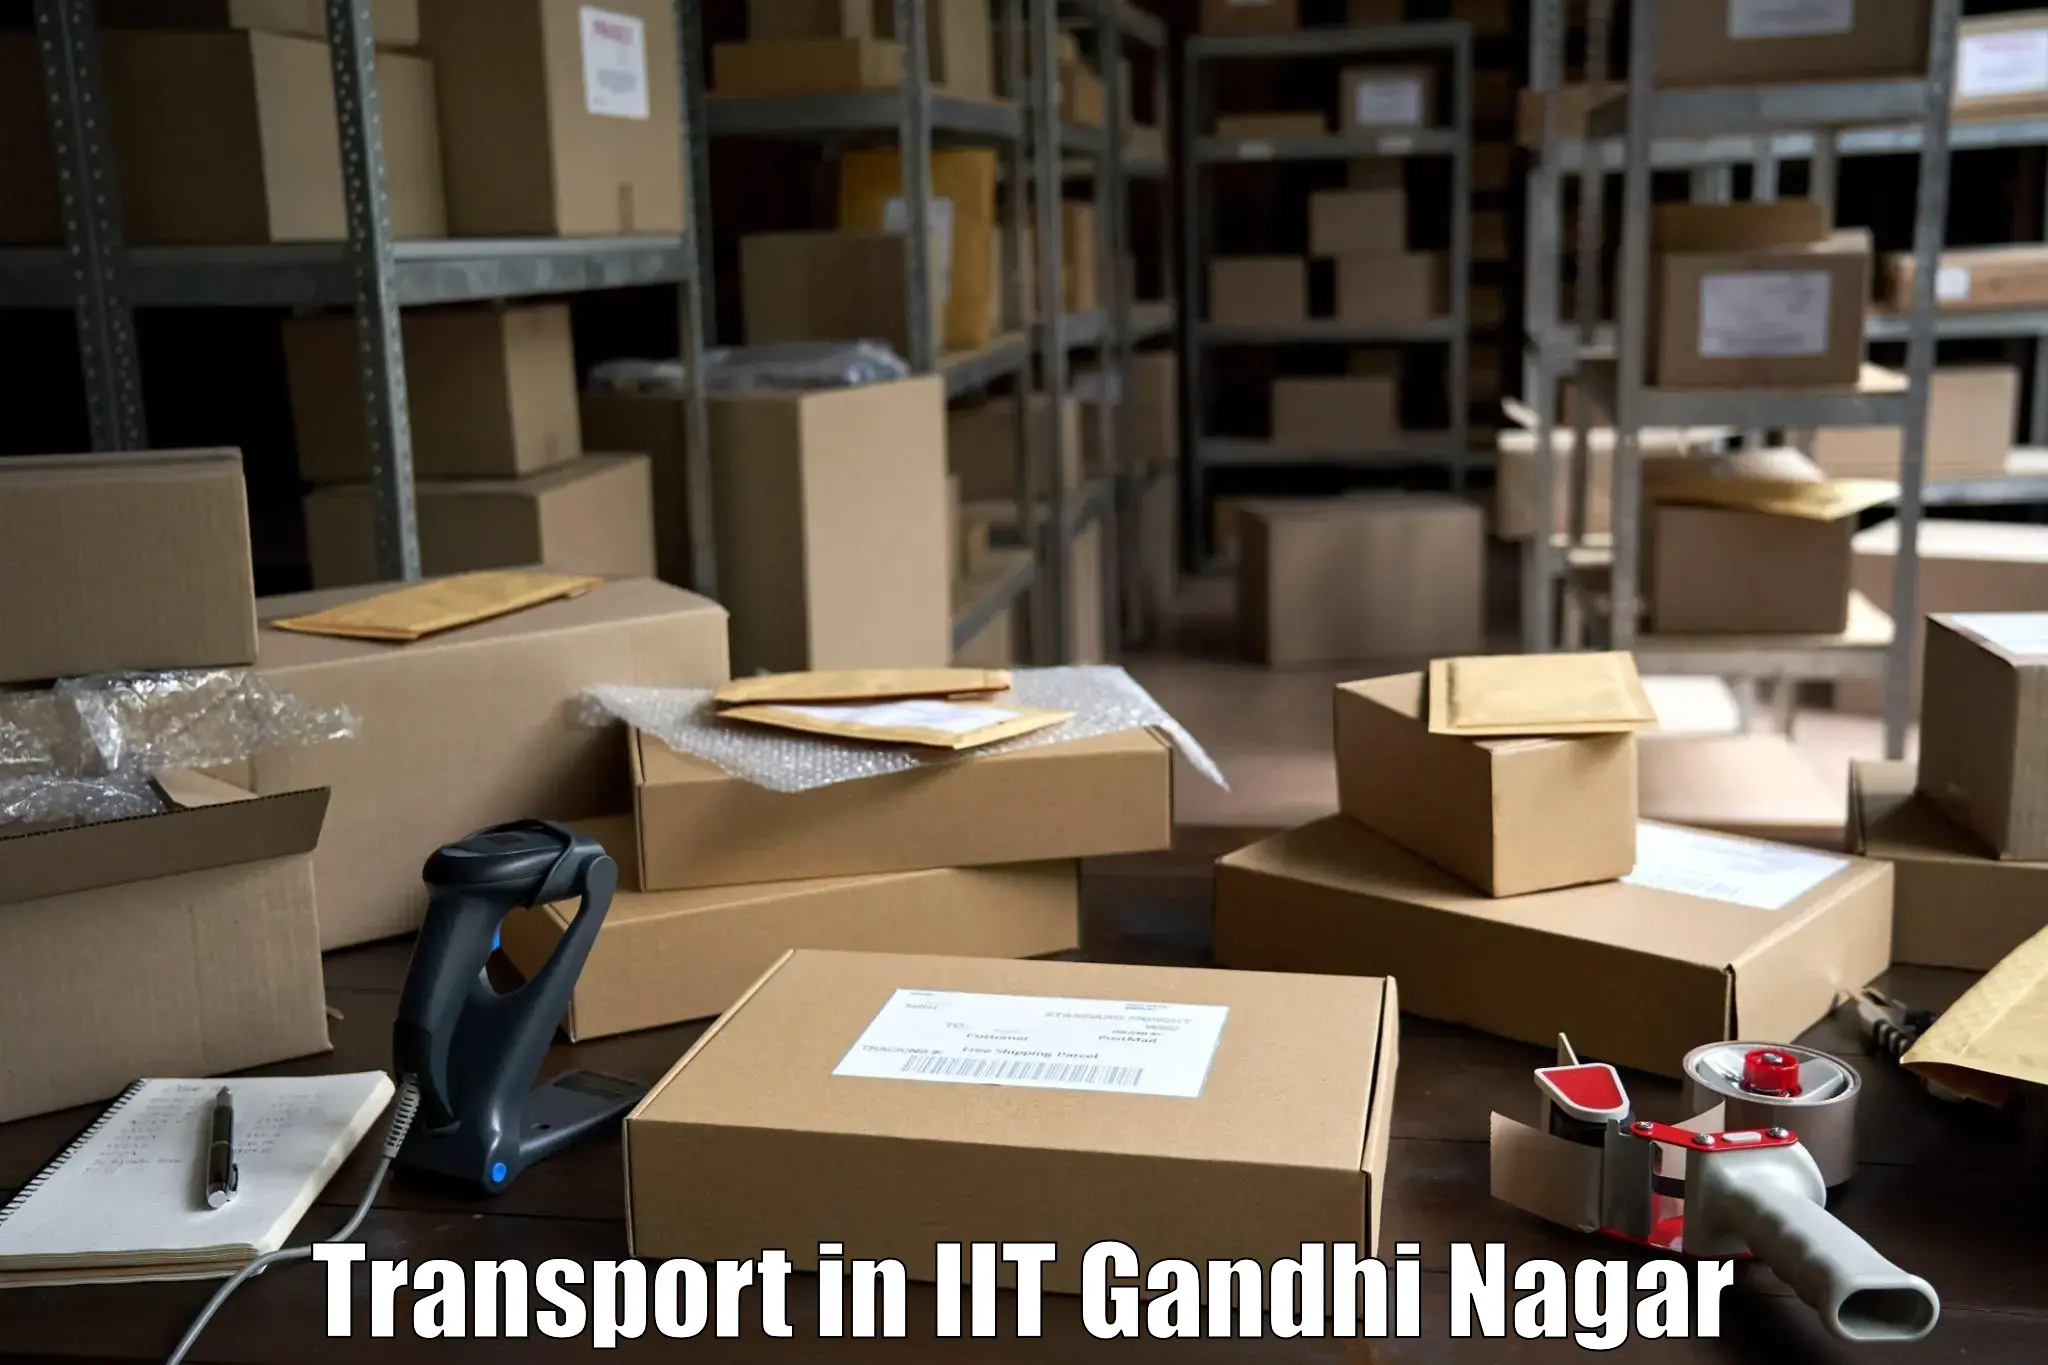 Bike shipping service in IIT Gandhi Nagar